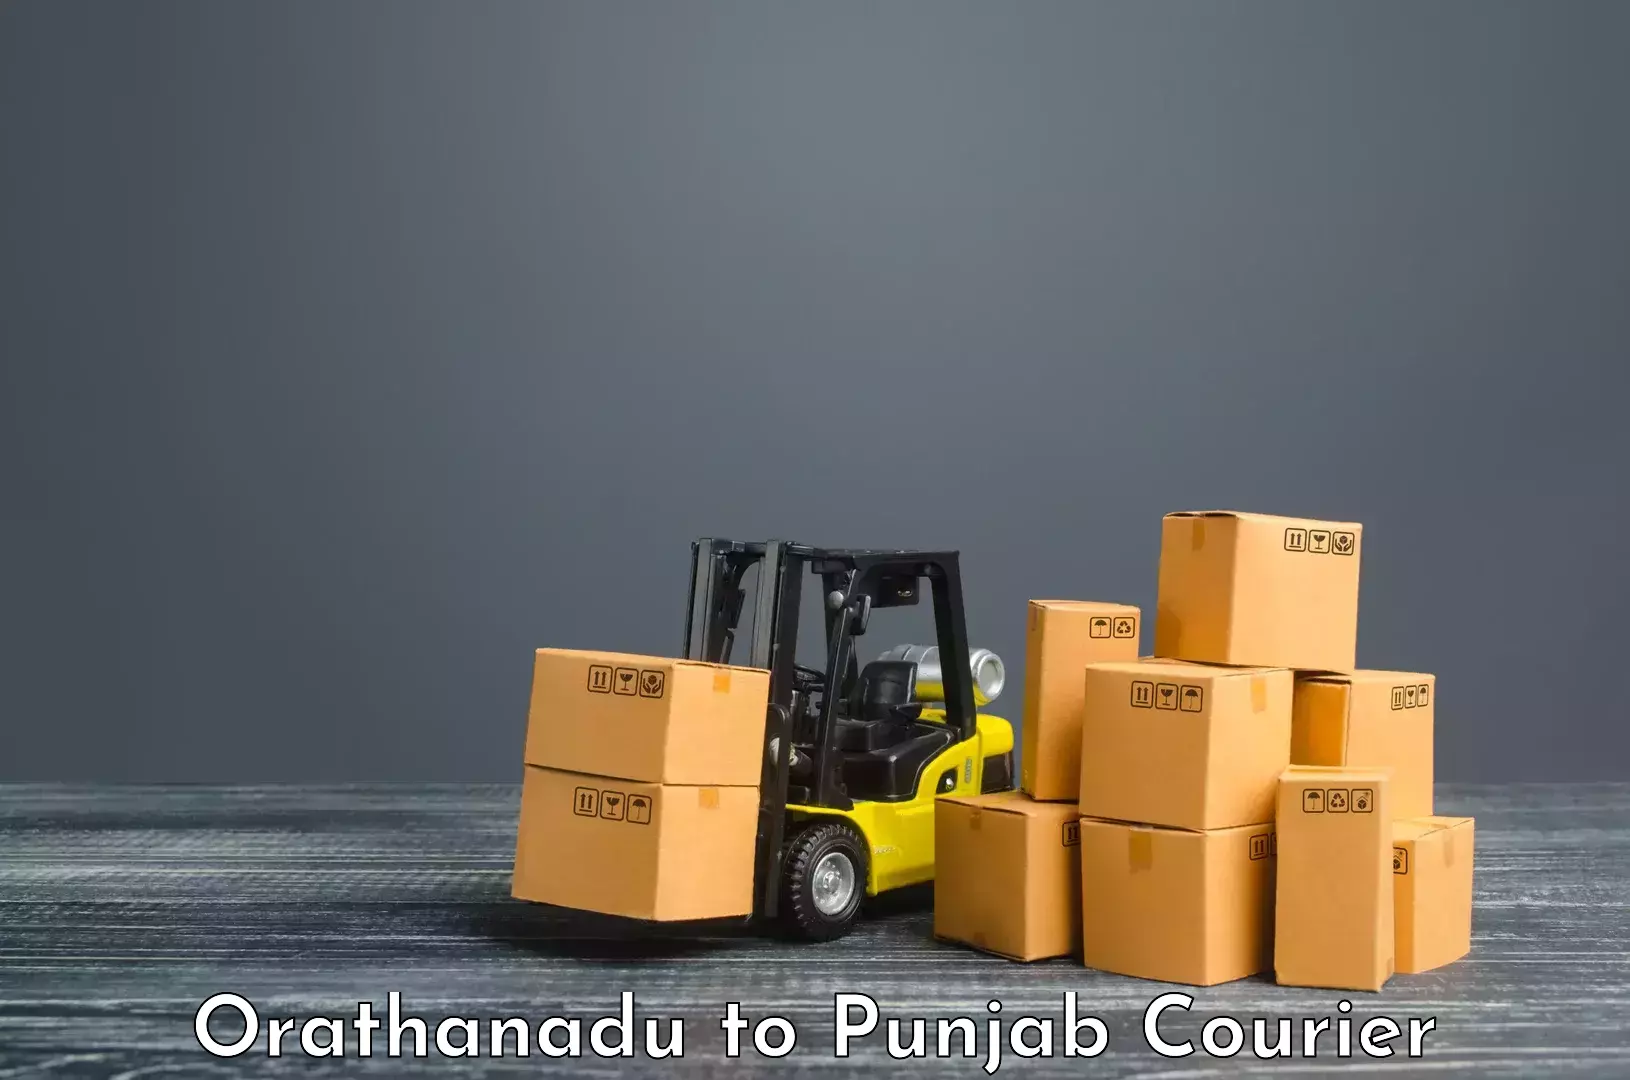 Domestic courier Orathanadu to Sirhind Fatehgarh